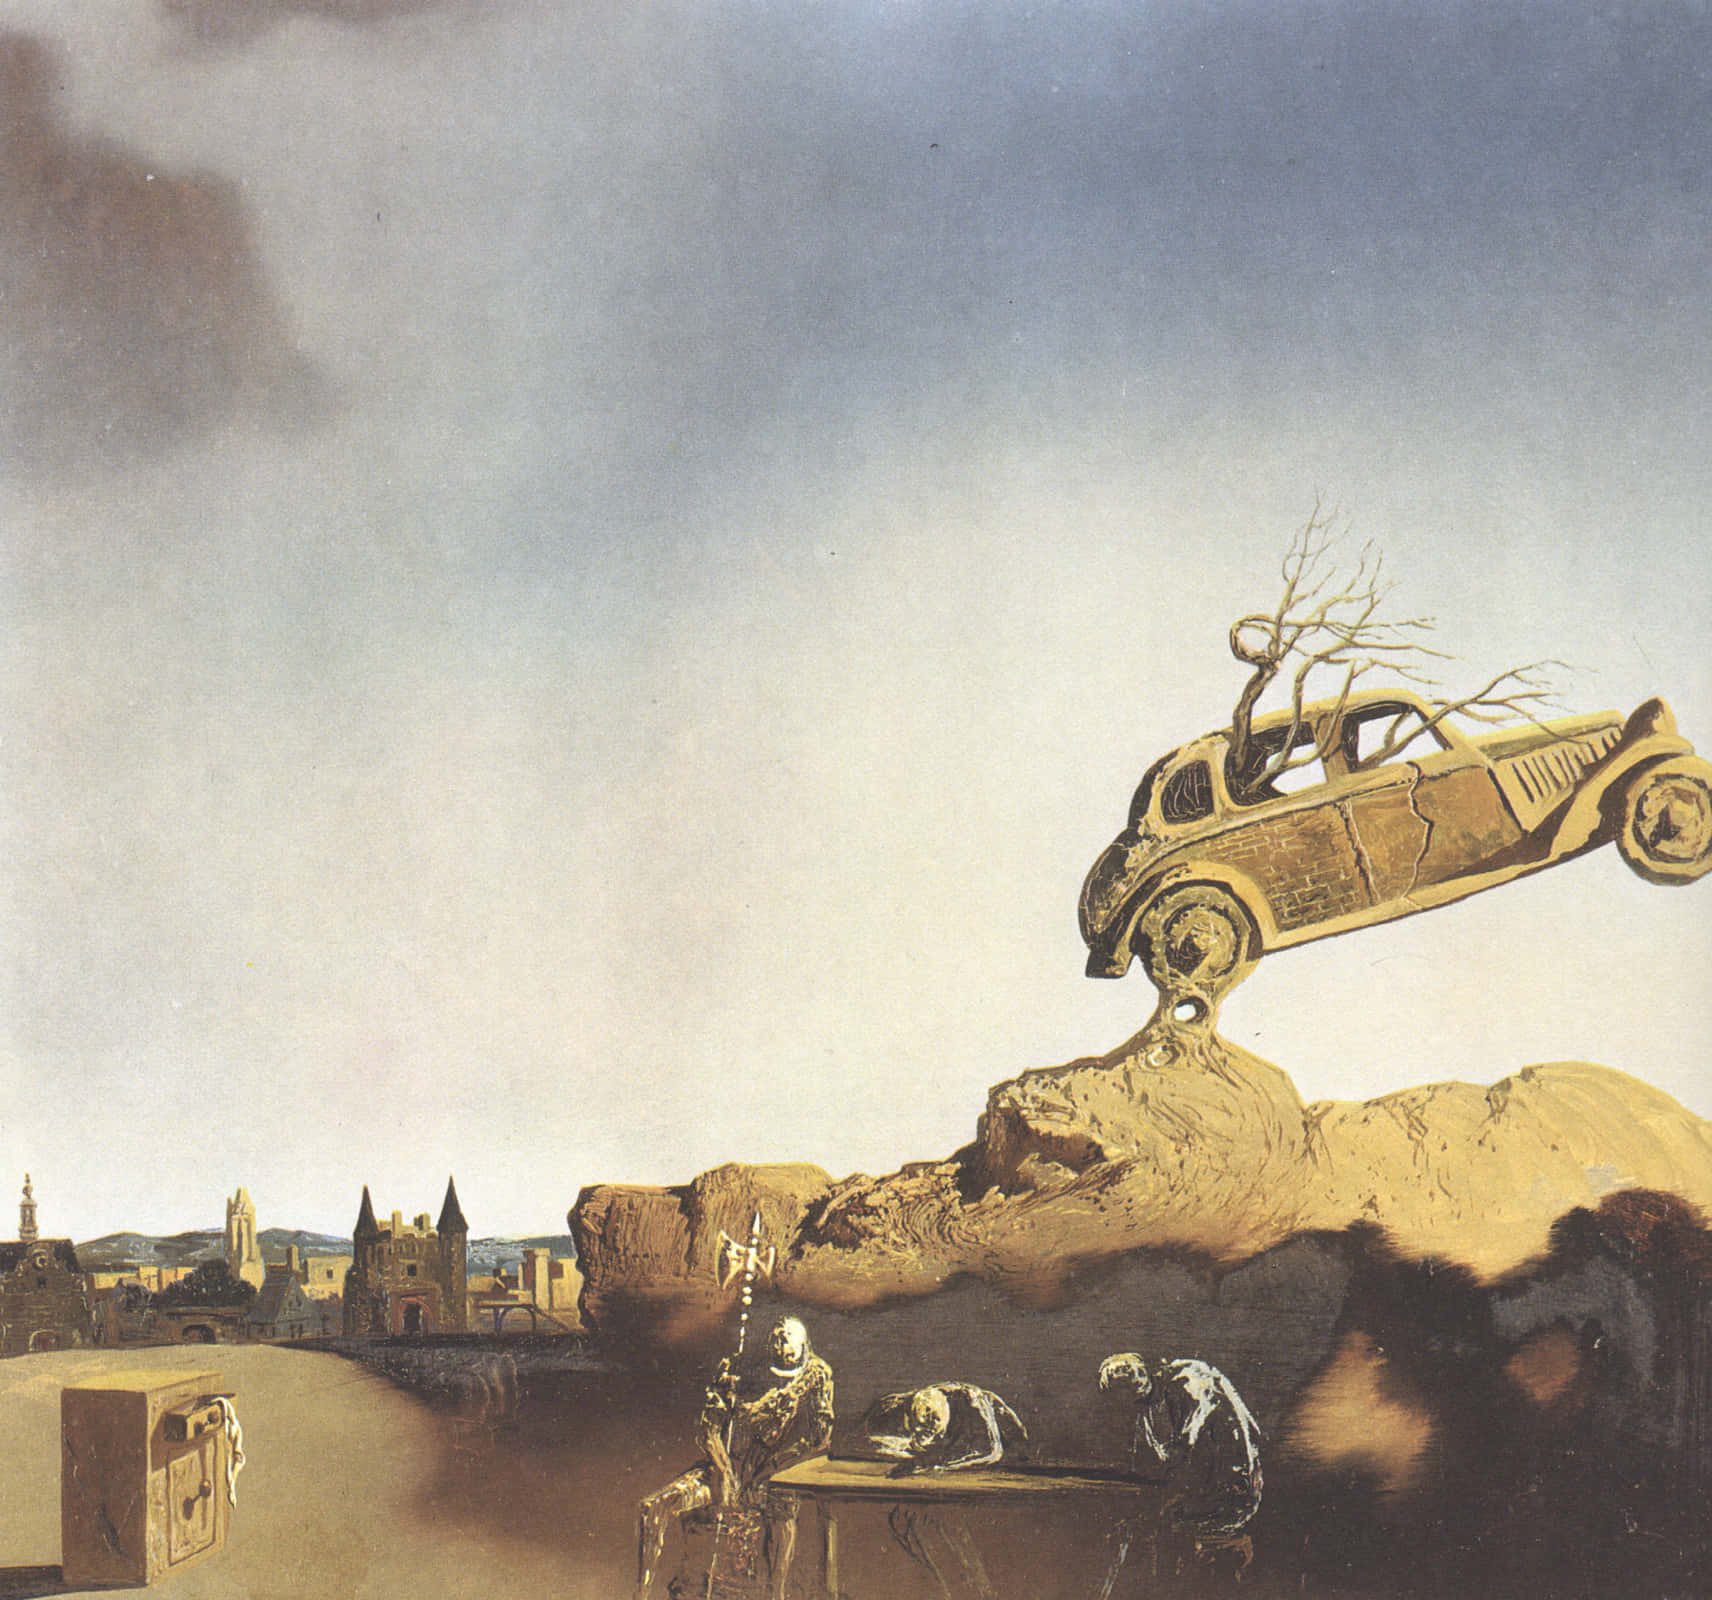 Salvador Dali Surreal Artwork Wallpaper